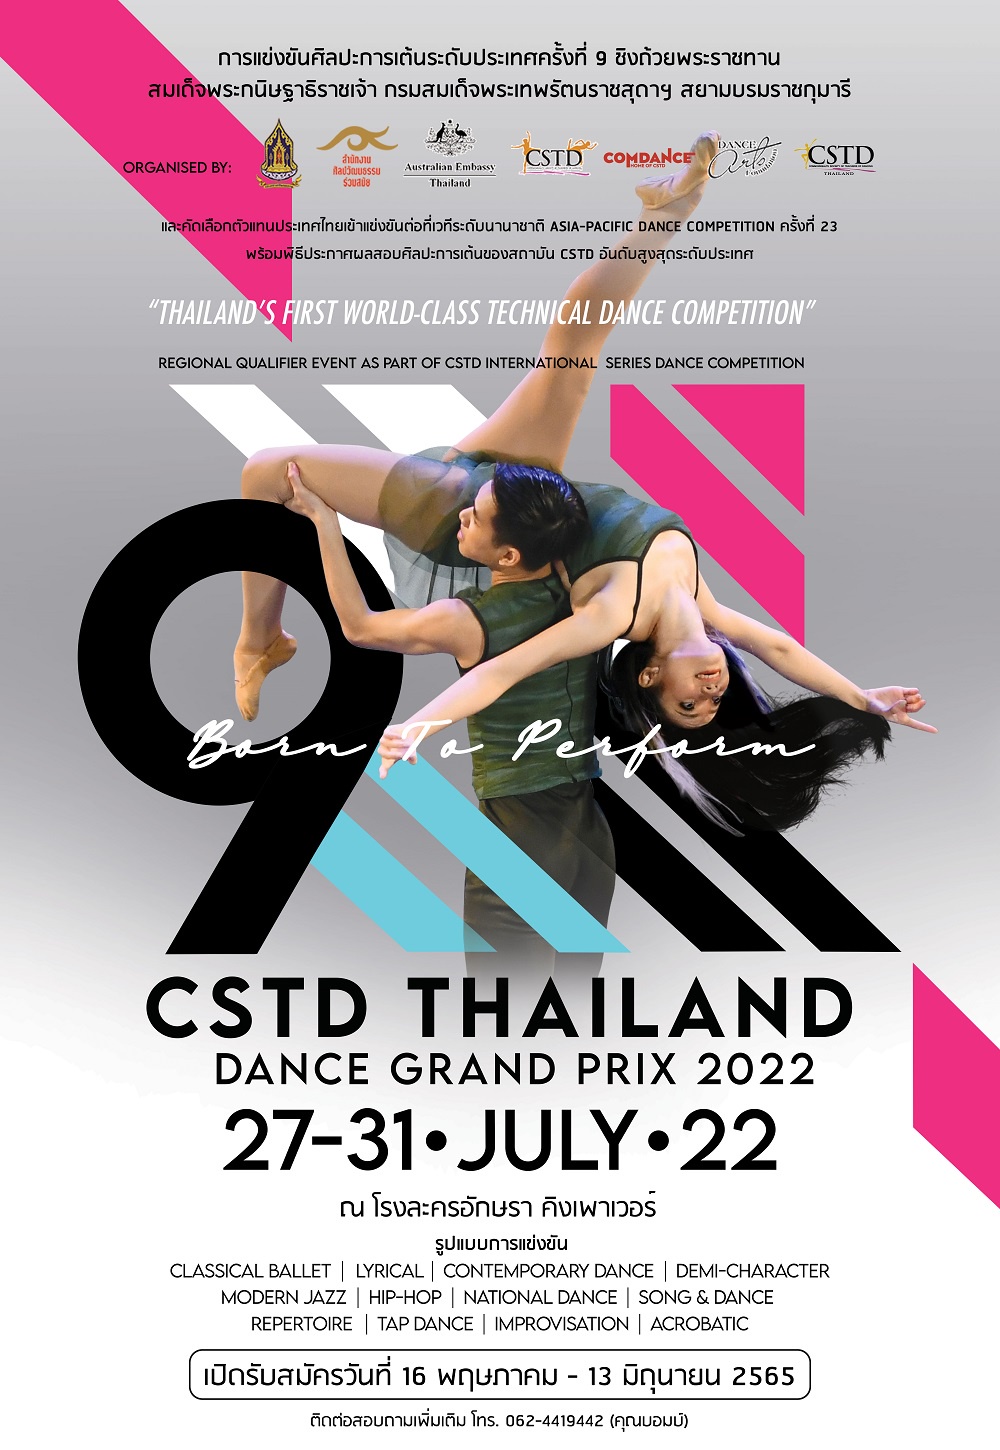 พร้อมแล้ว! เวทีแข่งขันศิลปะการเต้นมาตรฐานสากลครั้งยิ่งใหญ่ของไทย CSTD ประเทศไทย ผนึก กระทรวงวัฒนธรรม เฟ้นหานักเต้นไทยร่วมแข่งระดับนานาชาติ